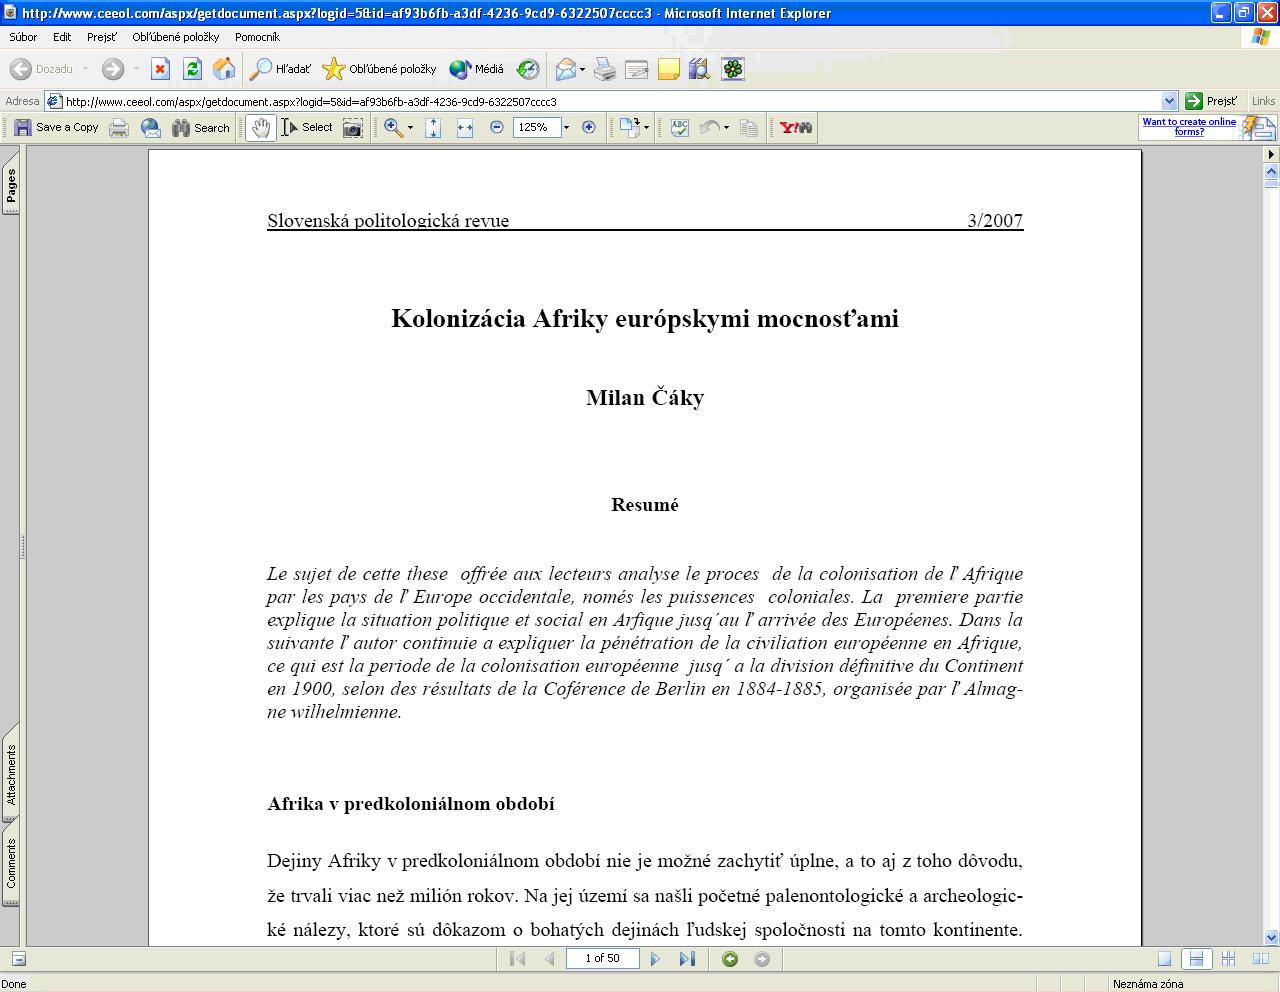 Obr. 7: Konkrétny článok v PDF formáte po kliknutí na tlačidlo „view“ (licencovaný prístup)